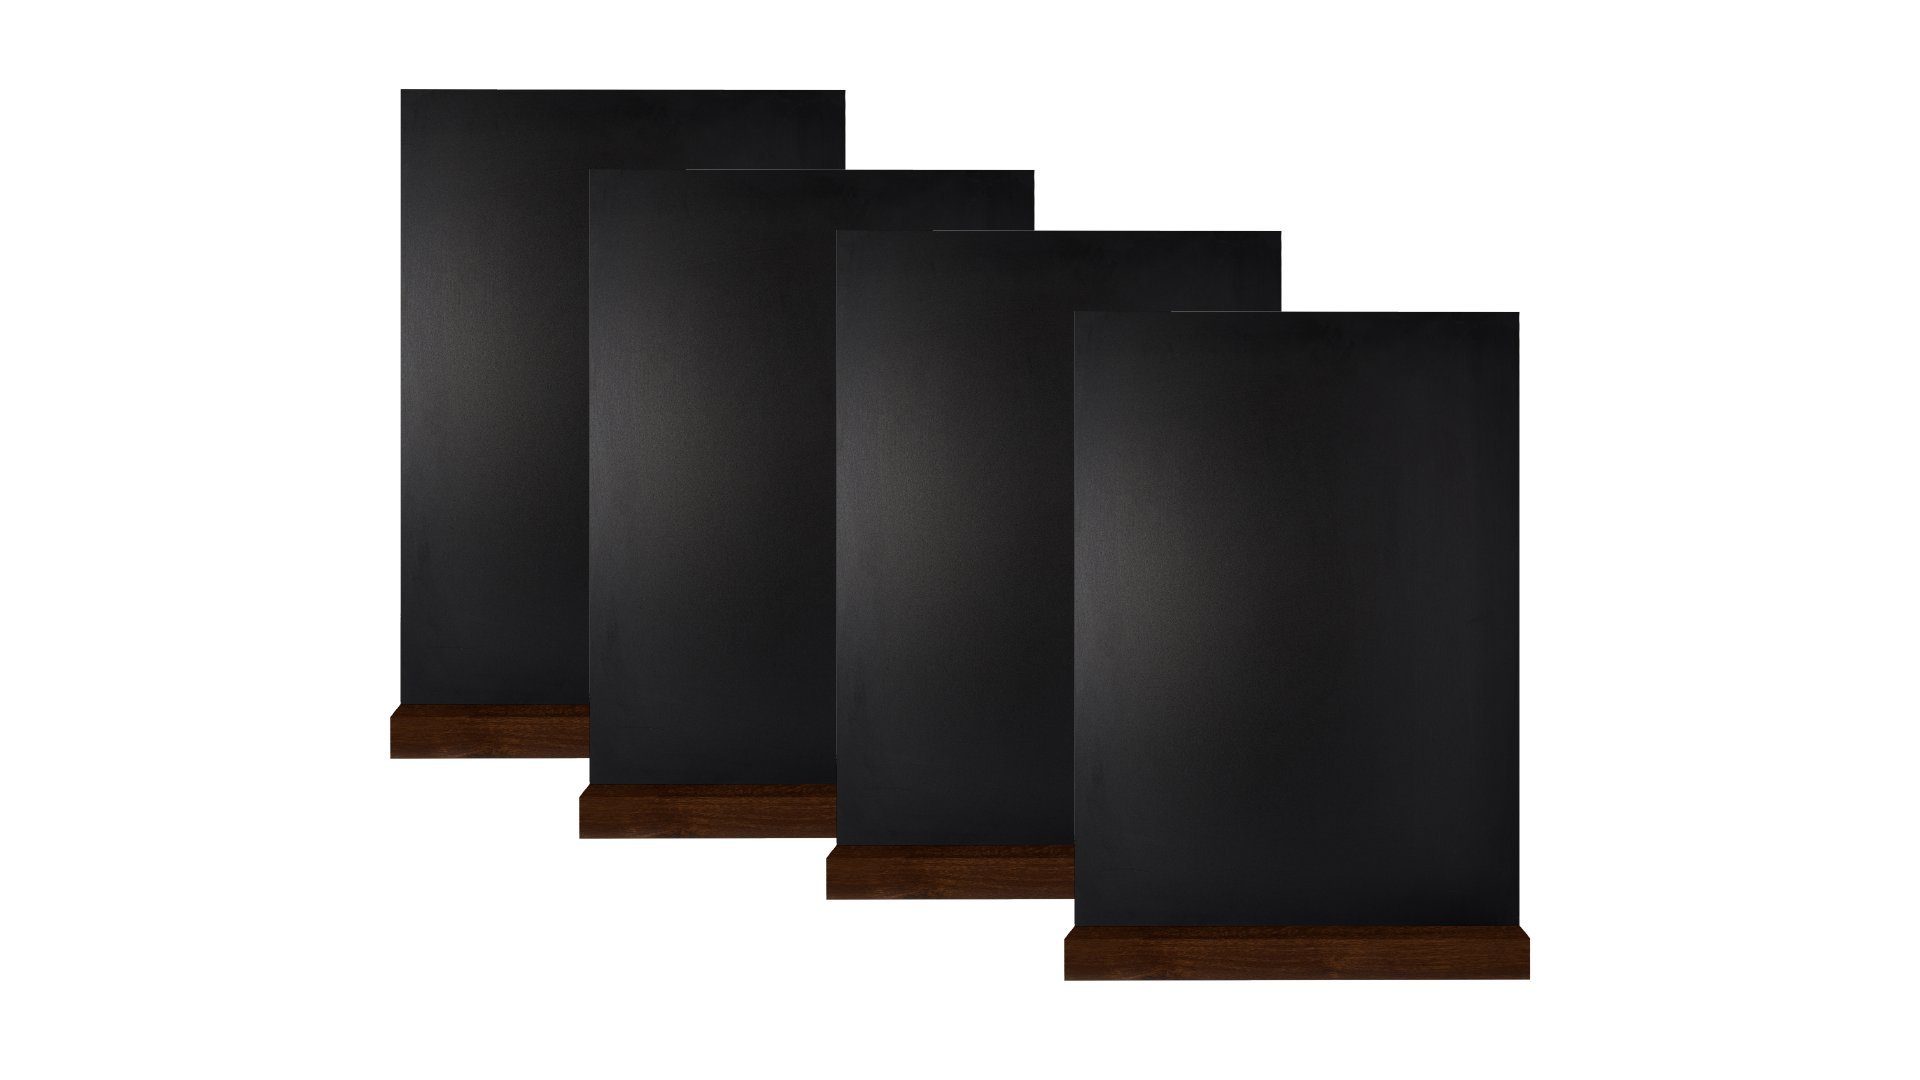 Mini Tischaufsteller Memoboard A6 Kreide Kleine Tafeln ALLboards doppelseitige